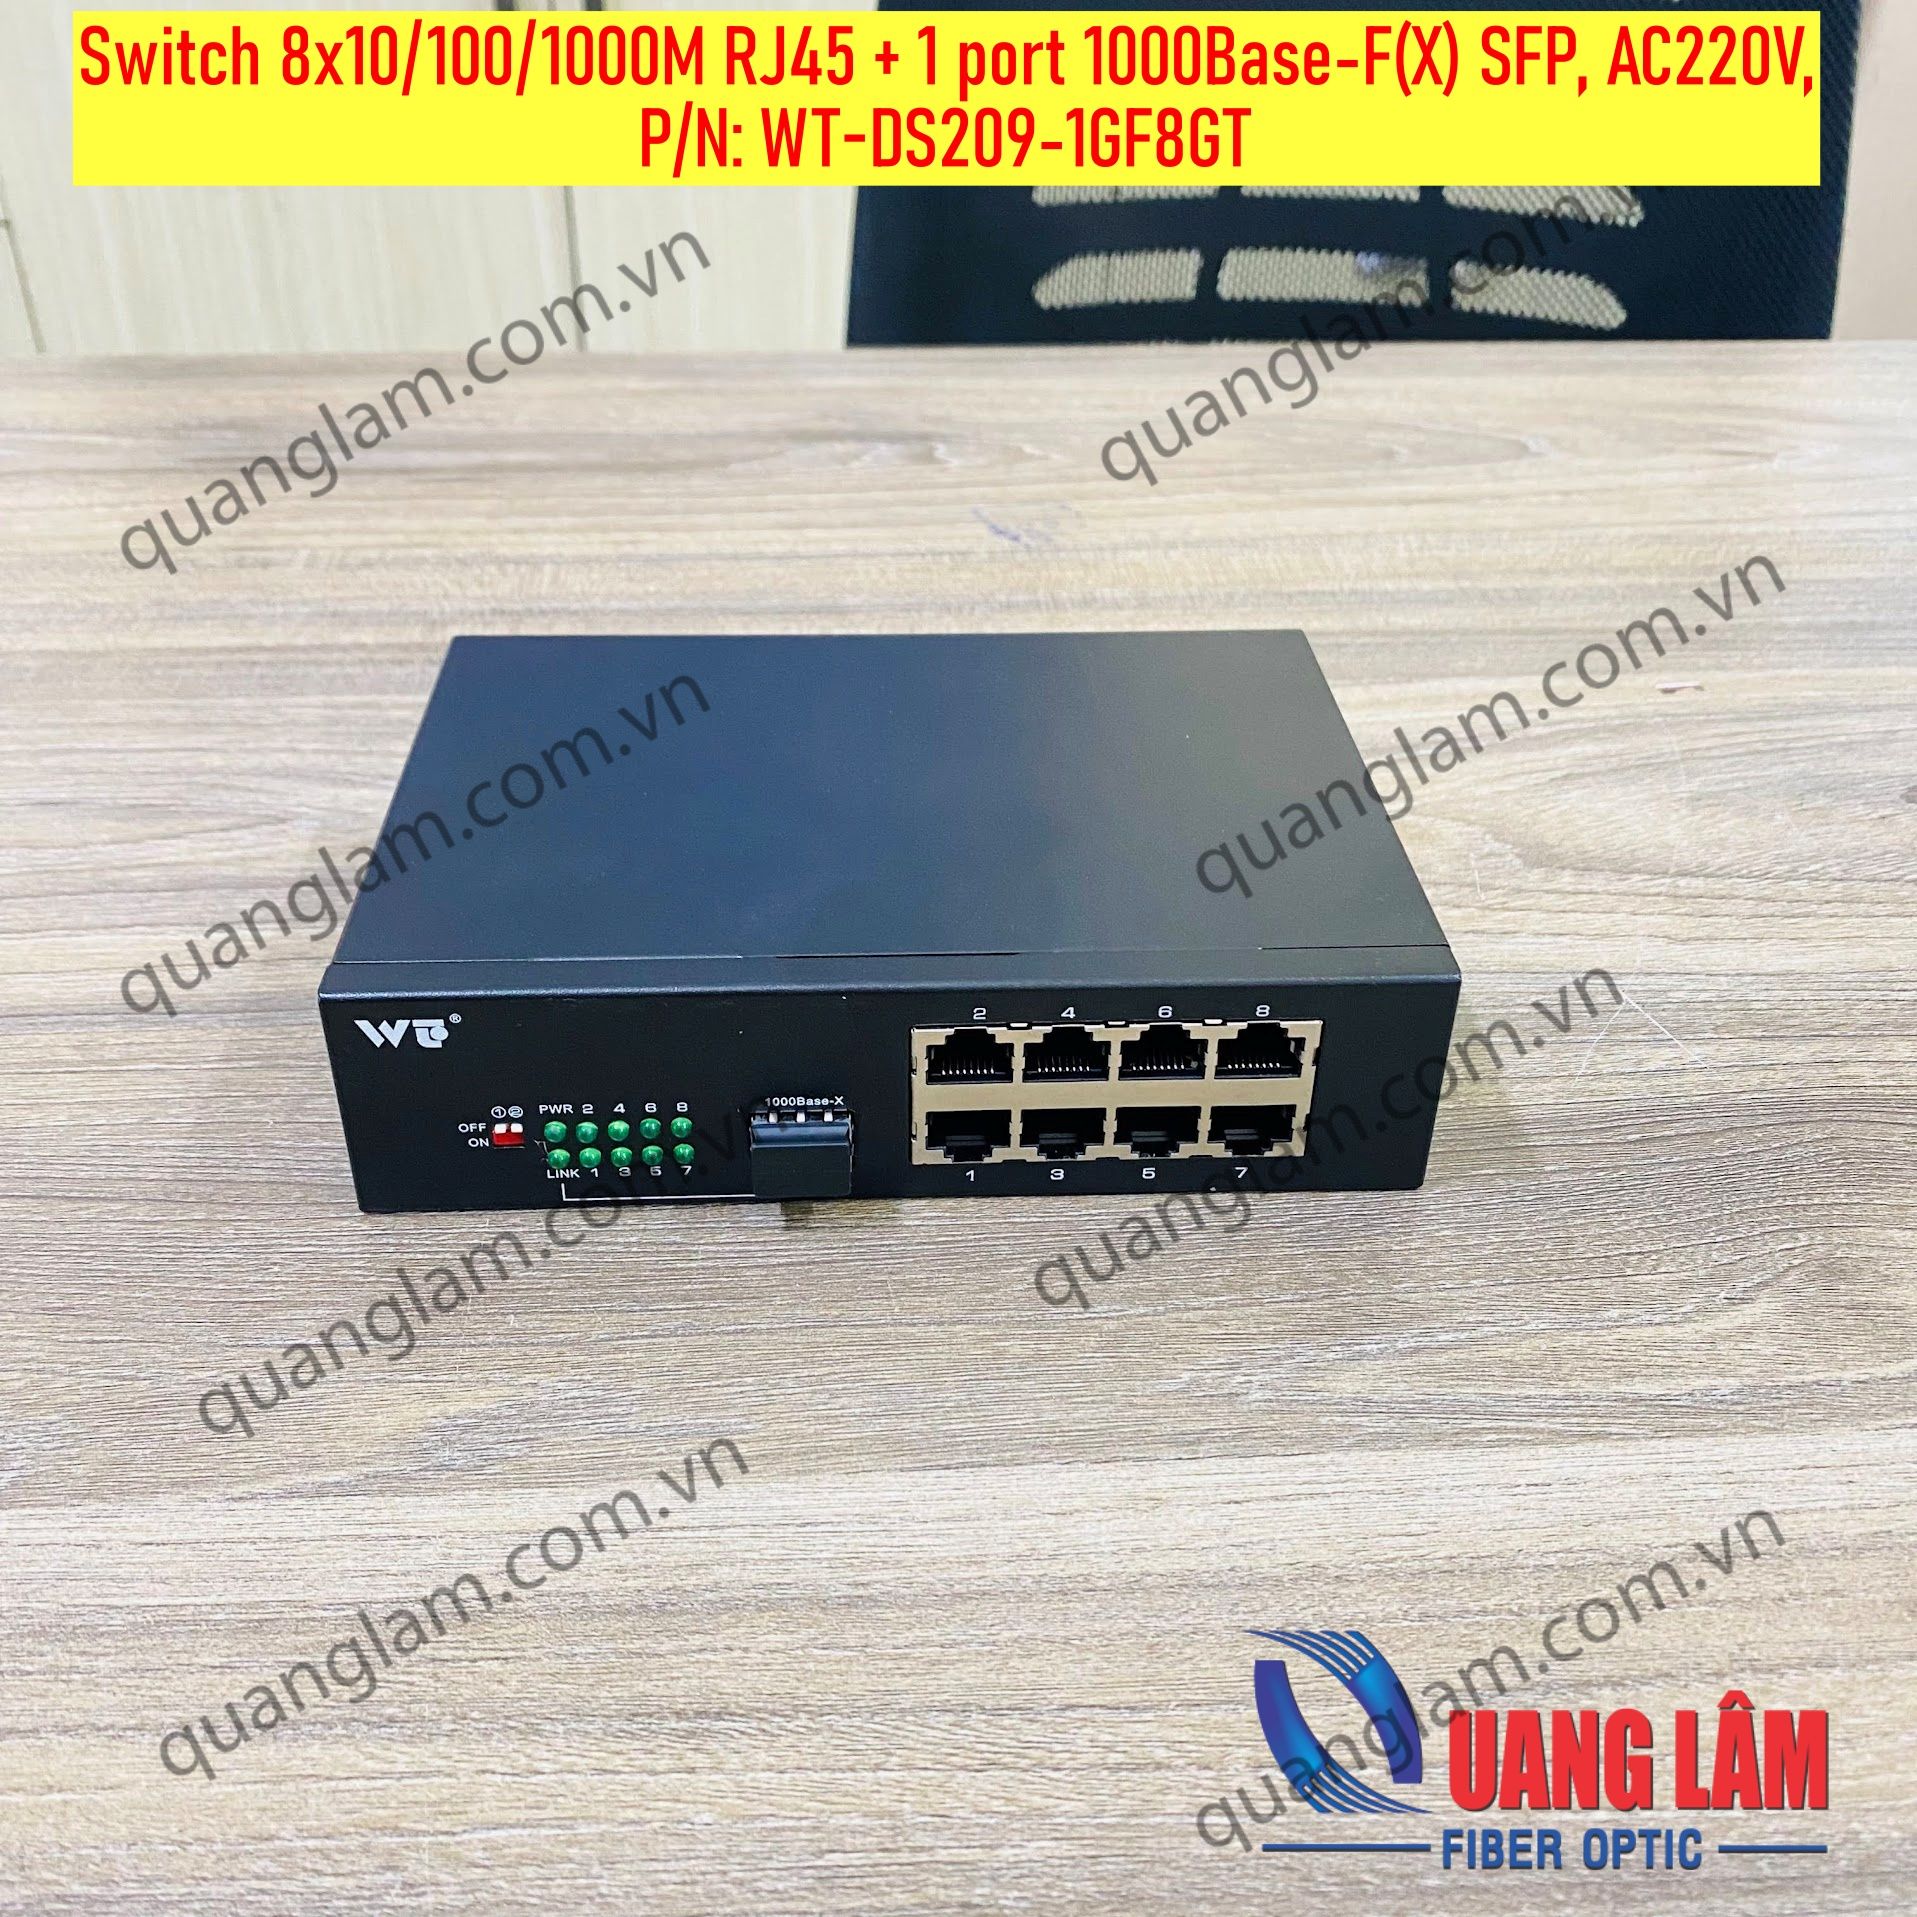 Switch 8x10/100/1000M RJ45 + 1 port 1000Base-F(X) SFP, AC220V, P/N: WT-DS209-1GF8GT